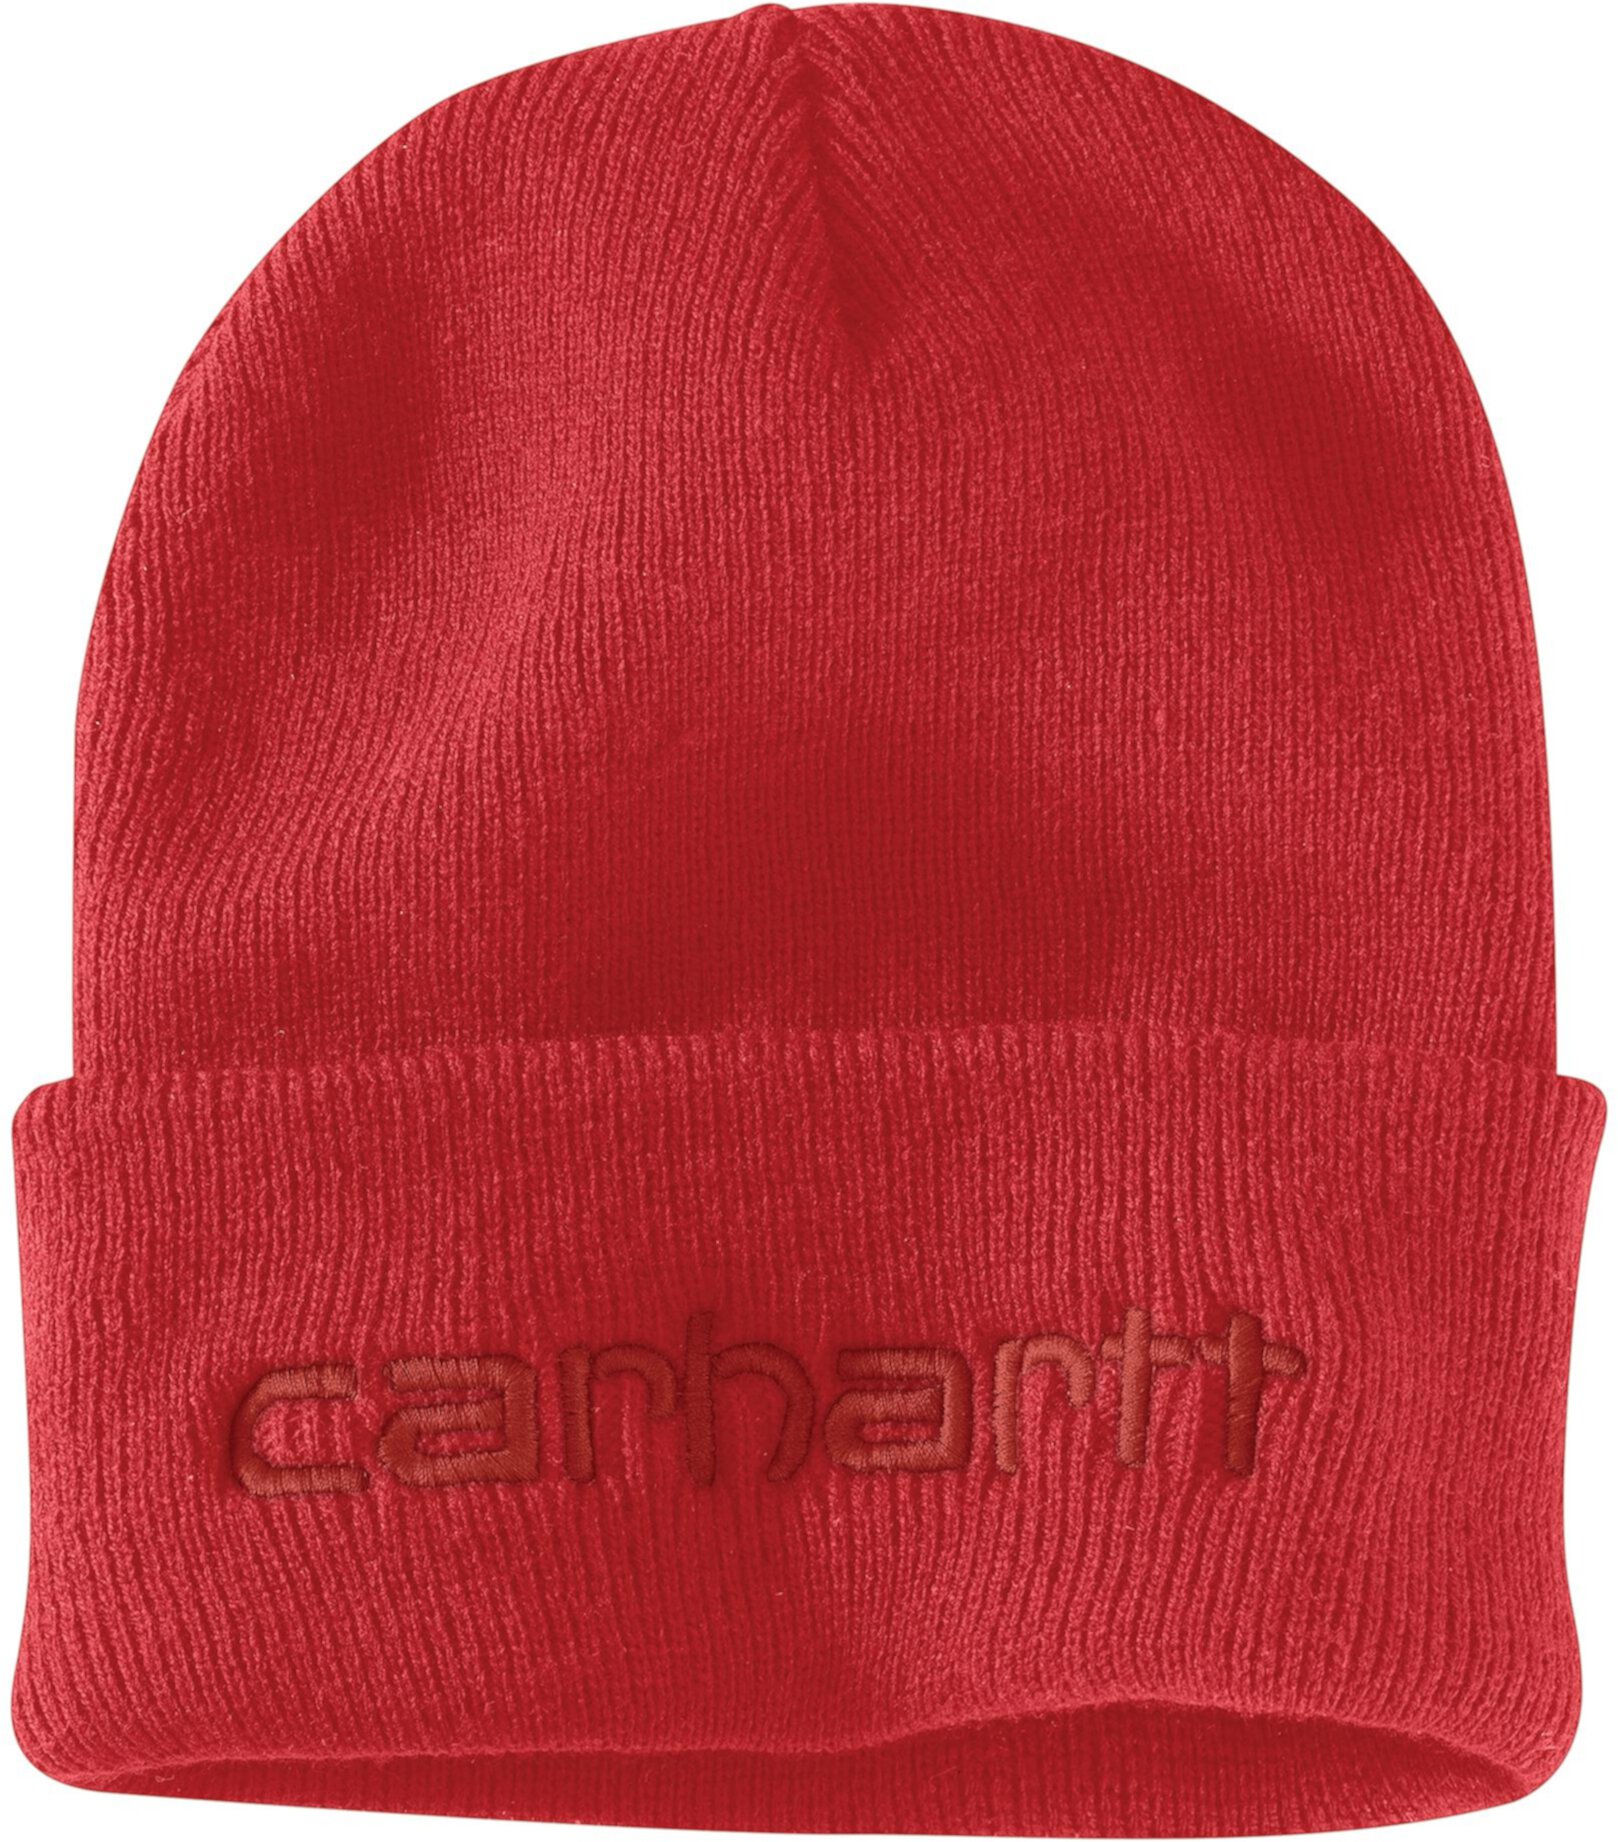 Вязаная утепленная шапка с логотипом и манжетами Carhartt